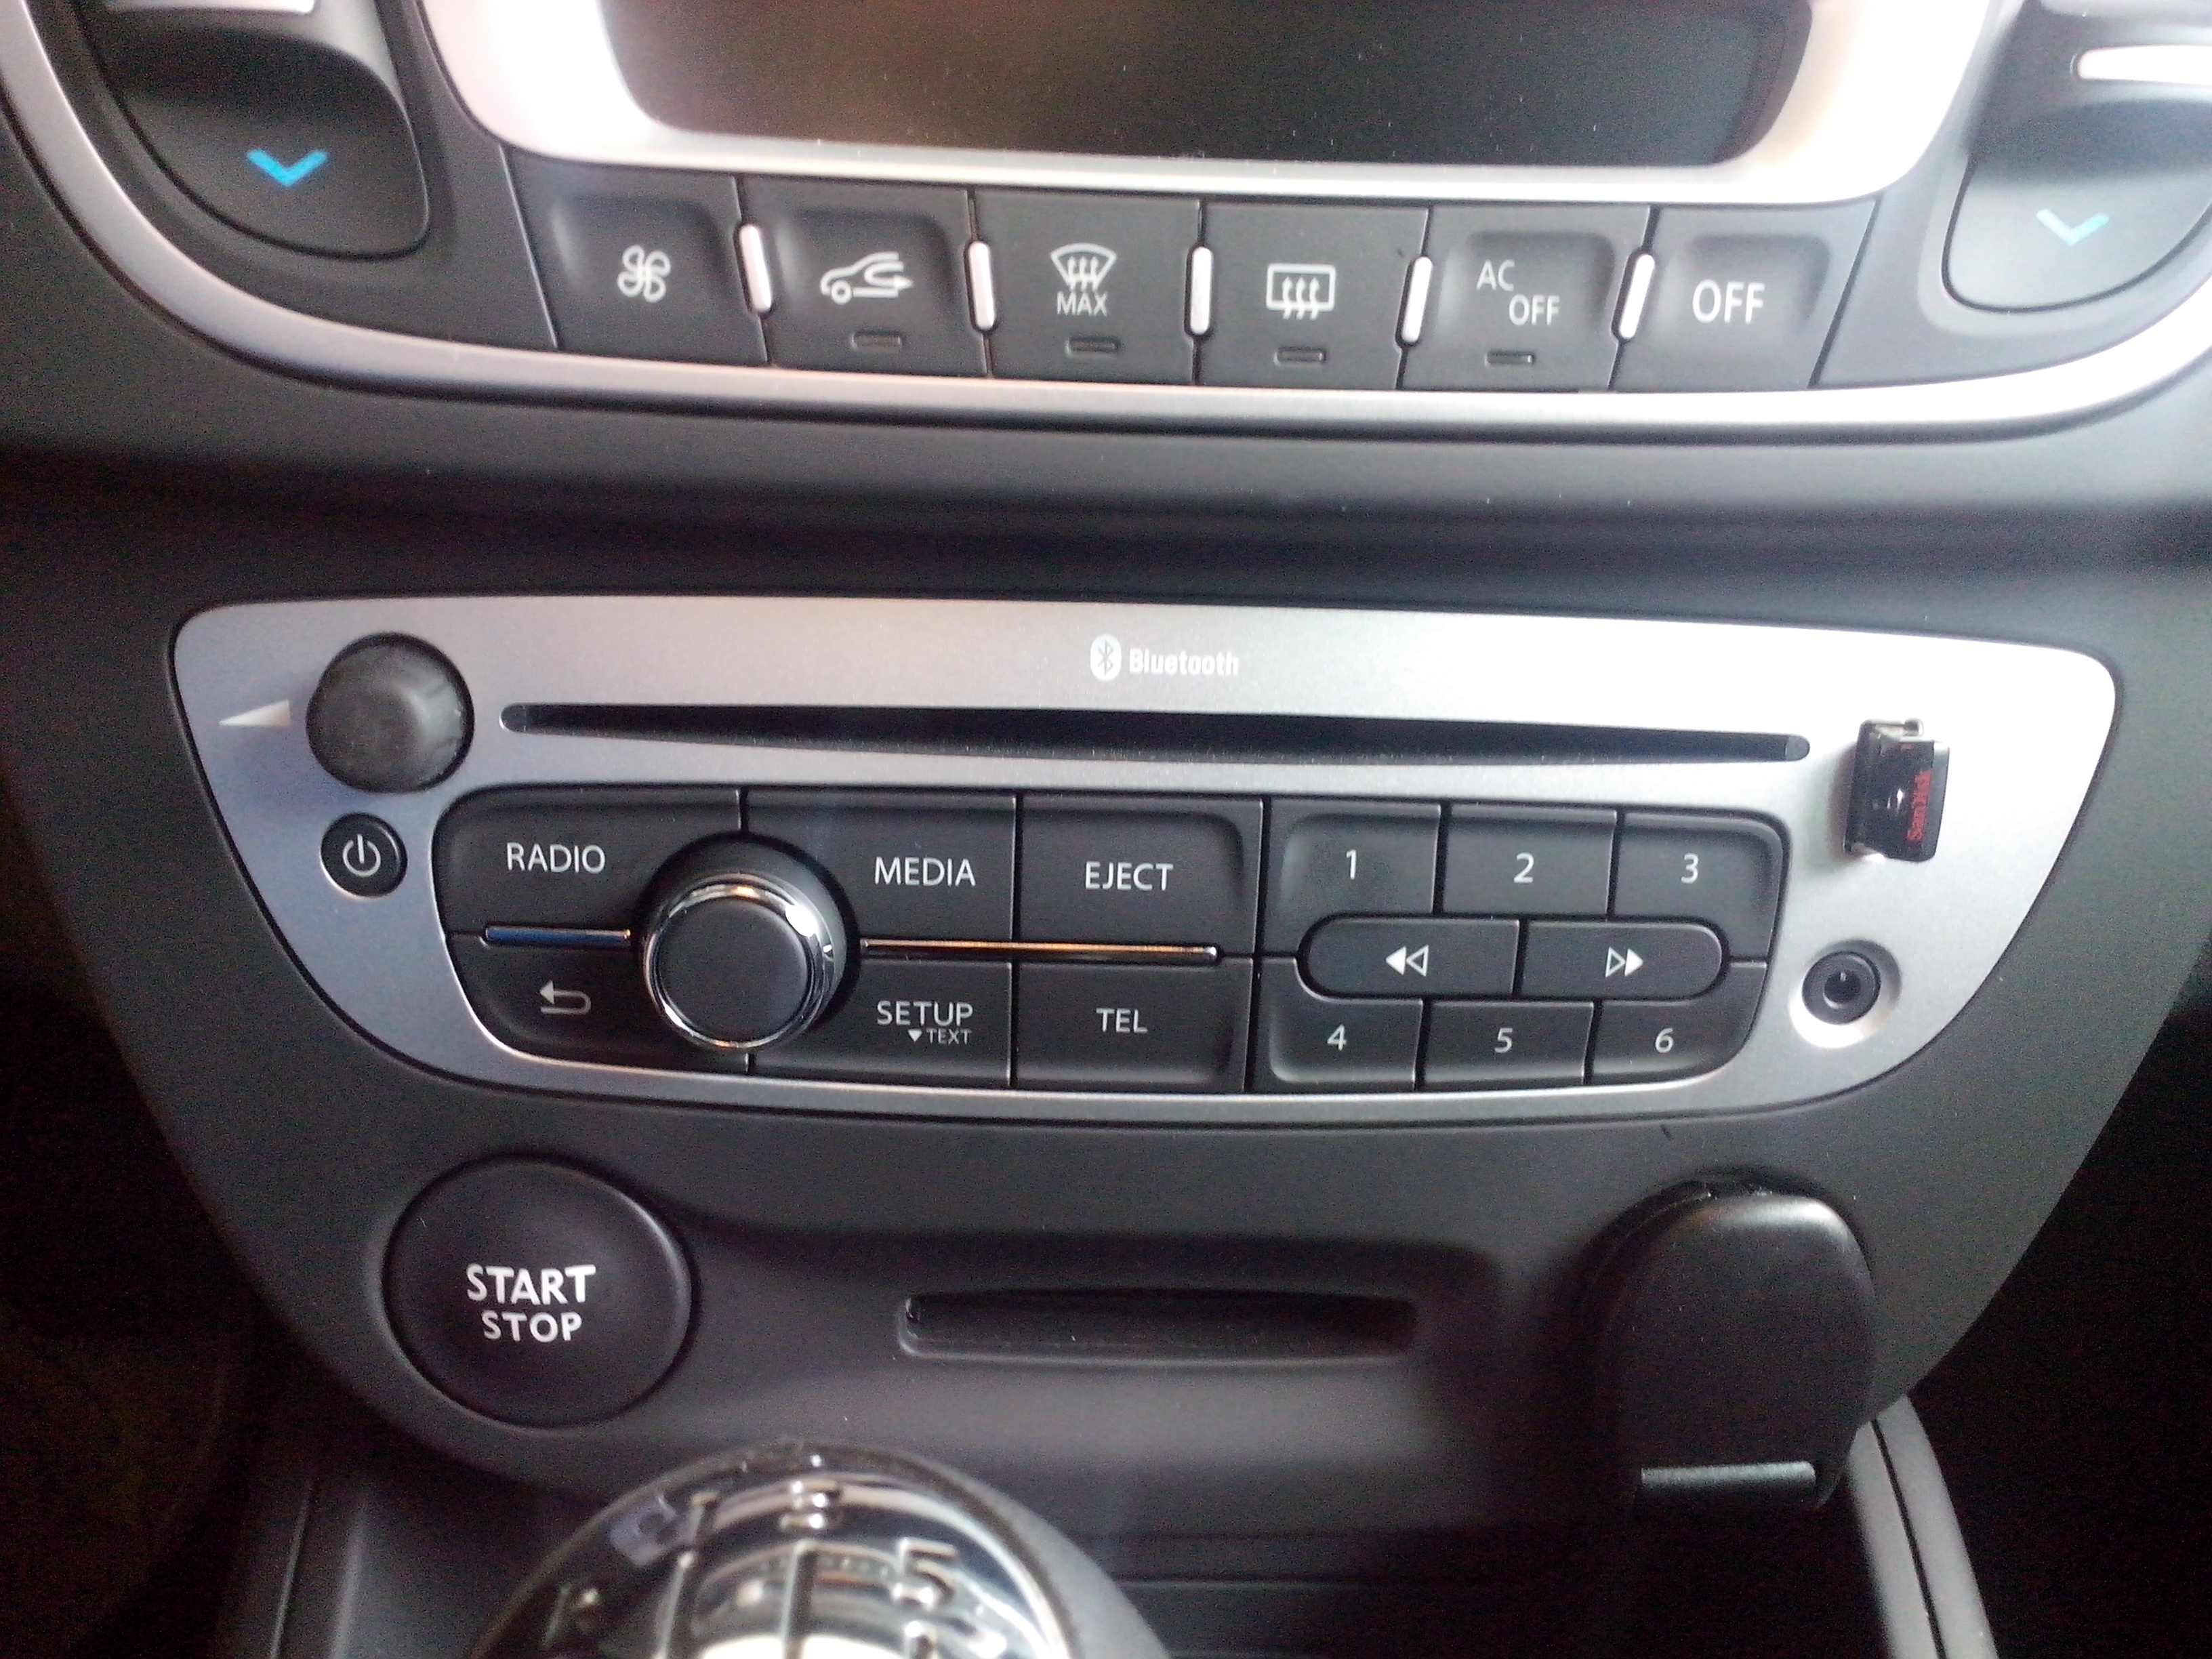 Bluetooth I Nawiązywanie Połączeń - Car Audio (Nagłośnienie, Nawigacja) - Forum Renault Megane, Scenic, Fluence